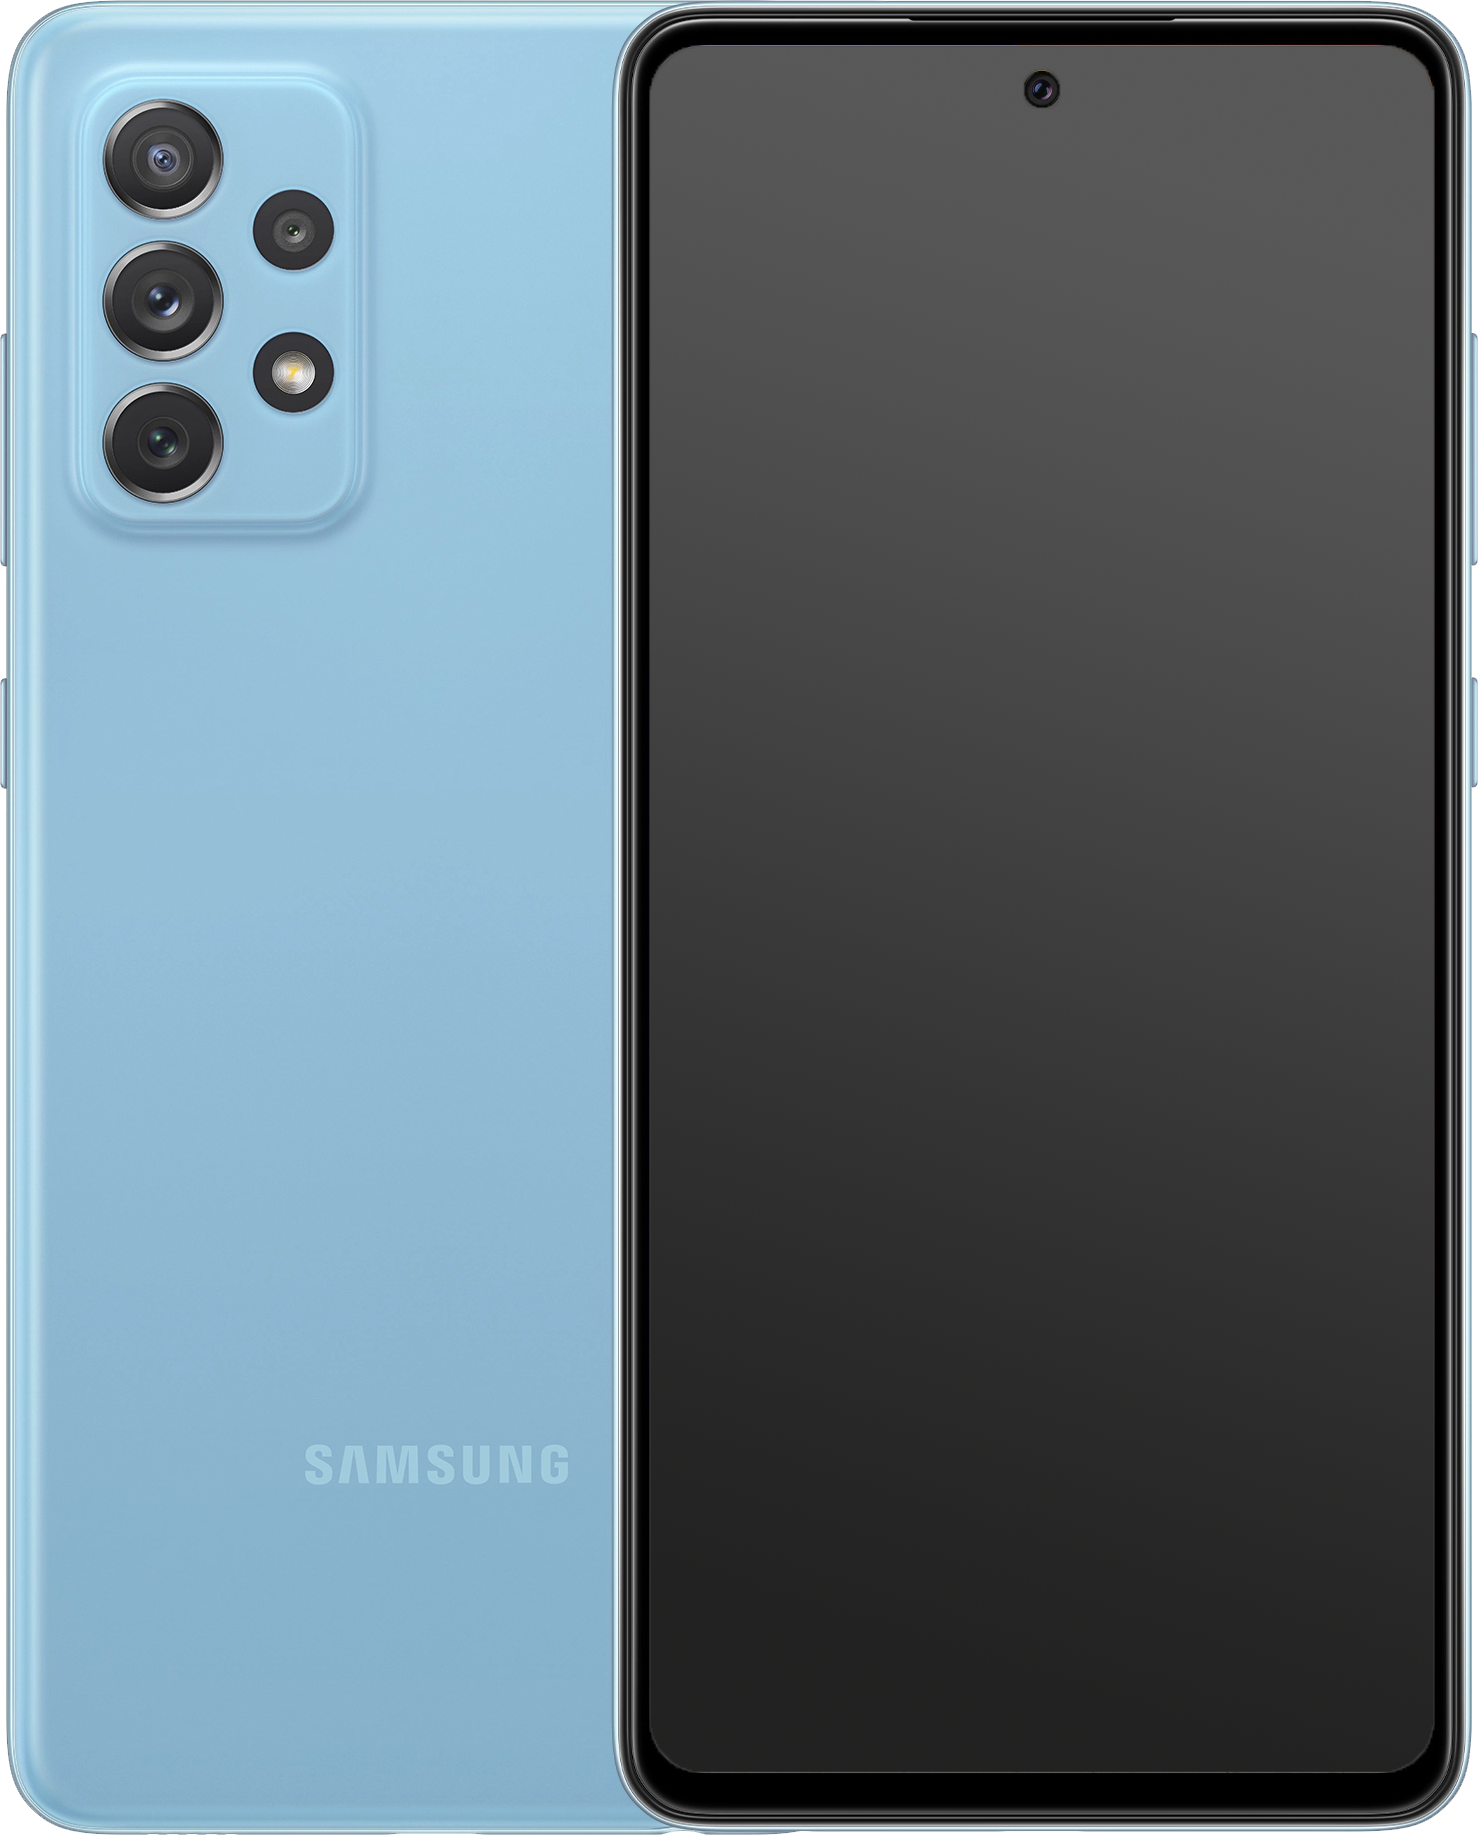 Samsung Galaxy A52 Dual-SIM blau - Ohne Vertrag